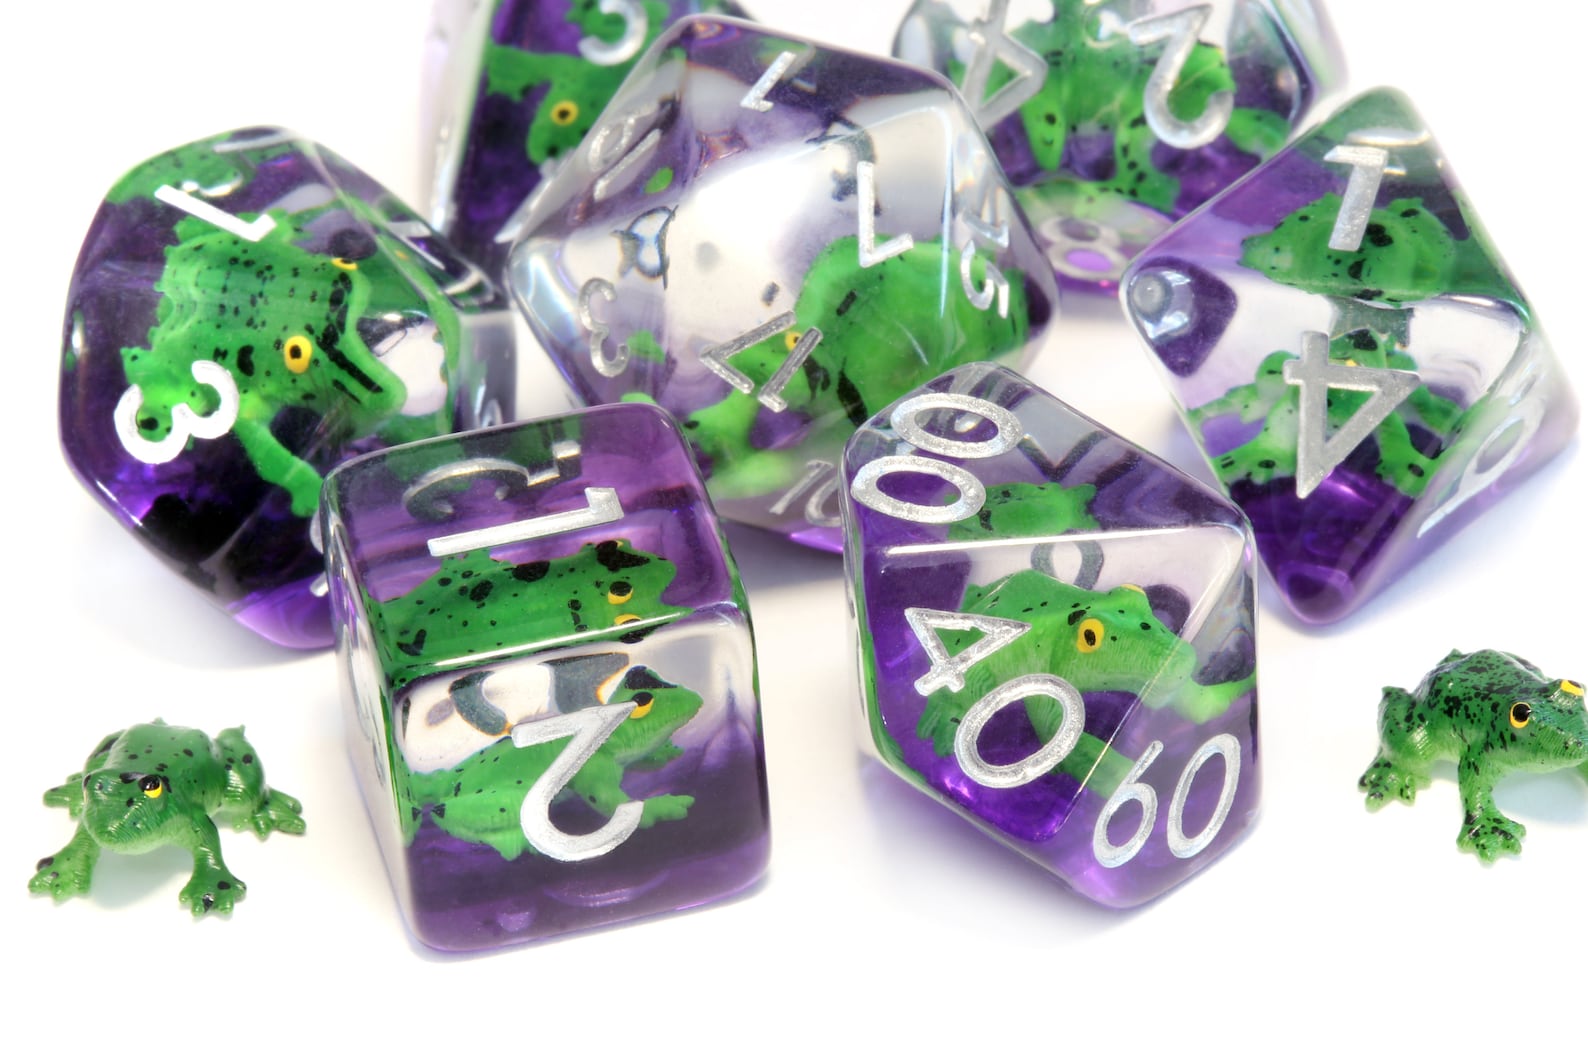 Green Frog dice set - The Wizard's Vault